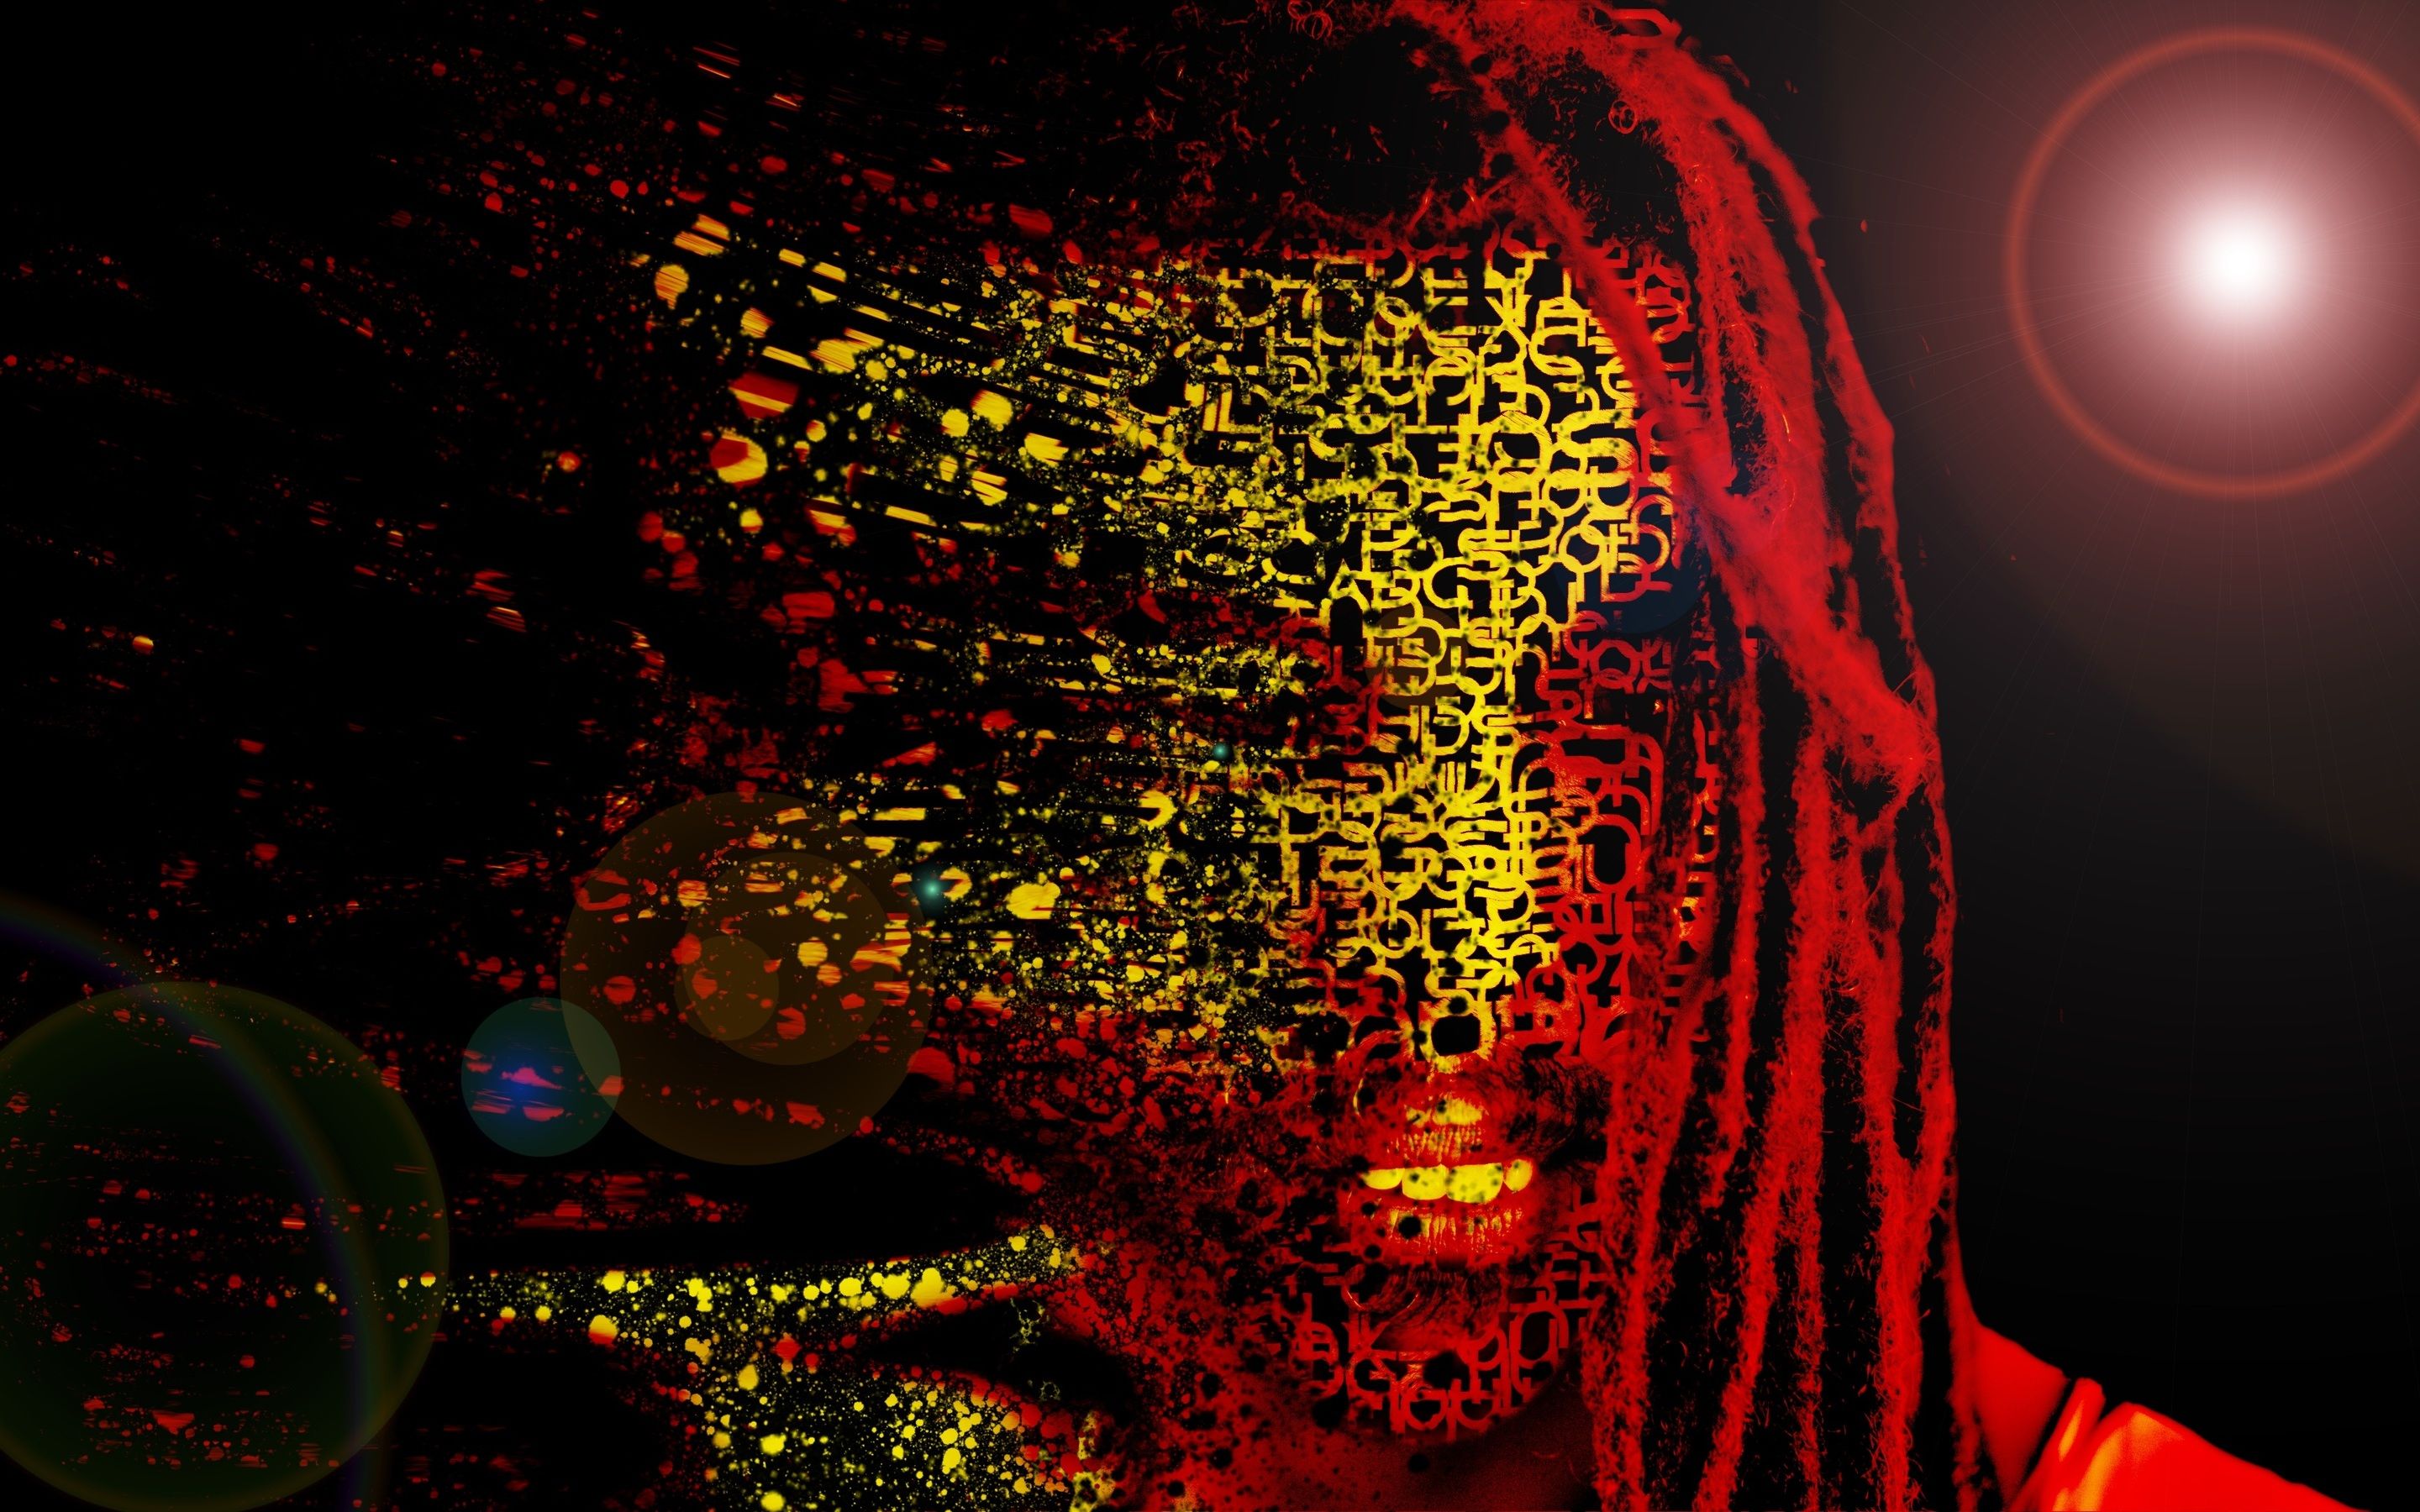 Bob Marley Mask Abstract Artwork 4k Macbook Pro Retina